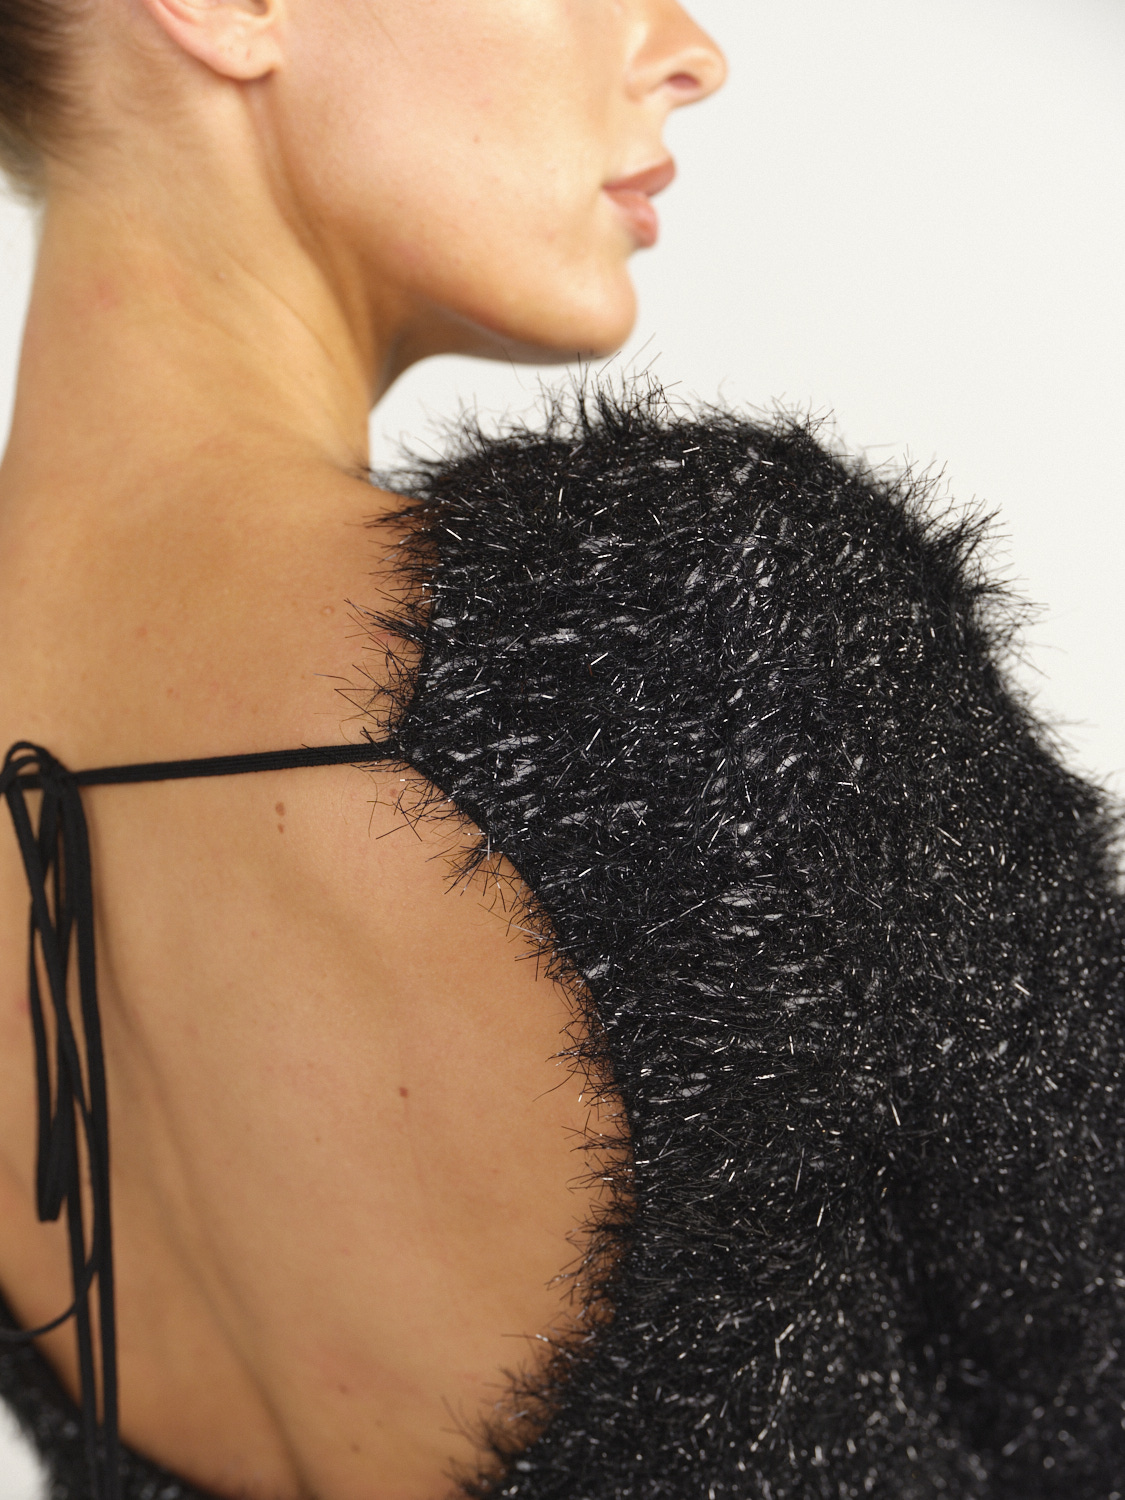 Victoria Beckham Sudadera con espalda abierta y detalles de hilos brillantes negro XXS